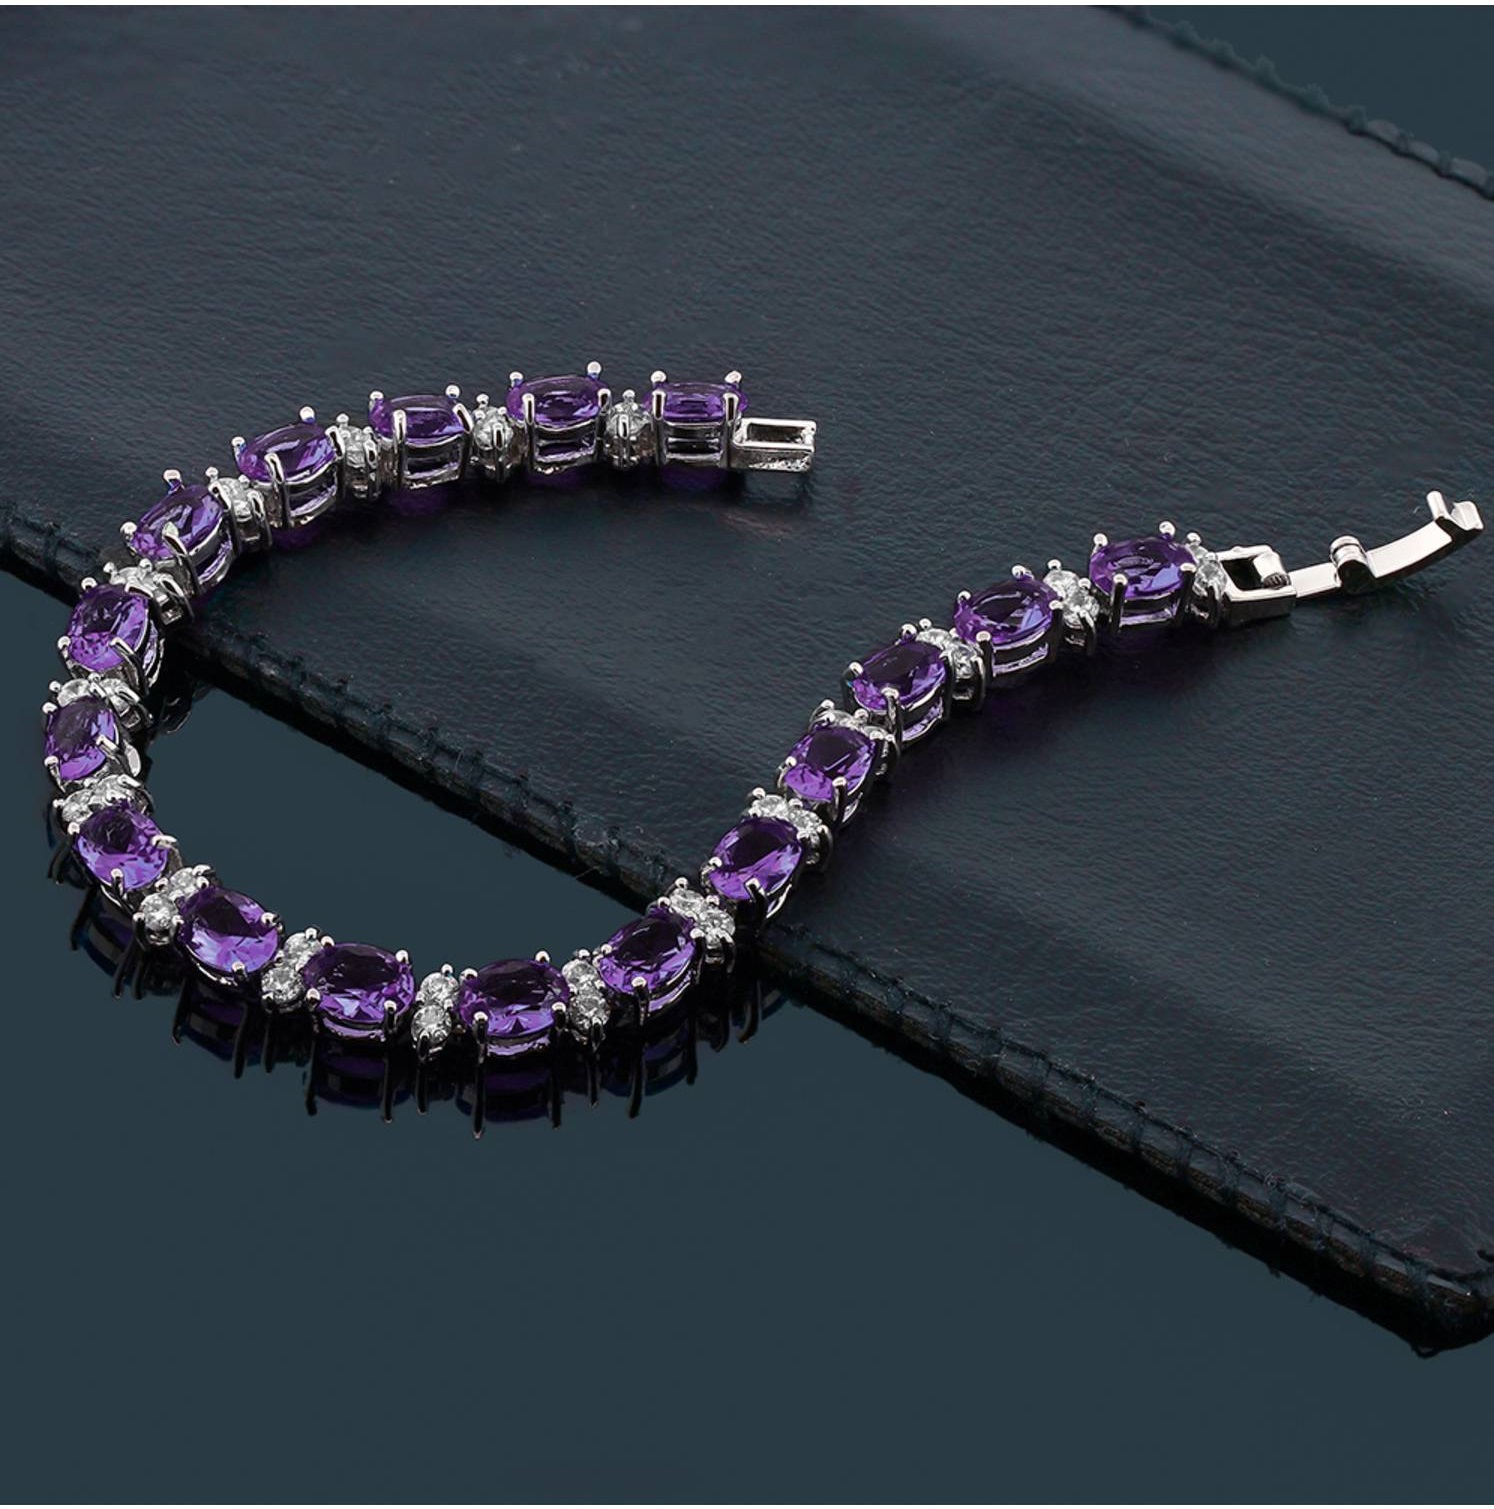 Gemstone-Bracelet Top 10 Gift Ideas for Women Over 50